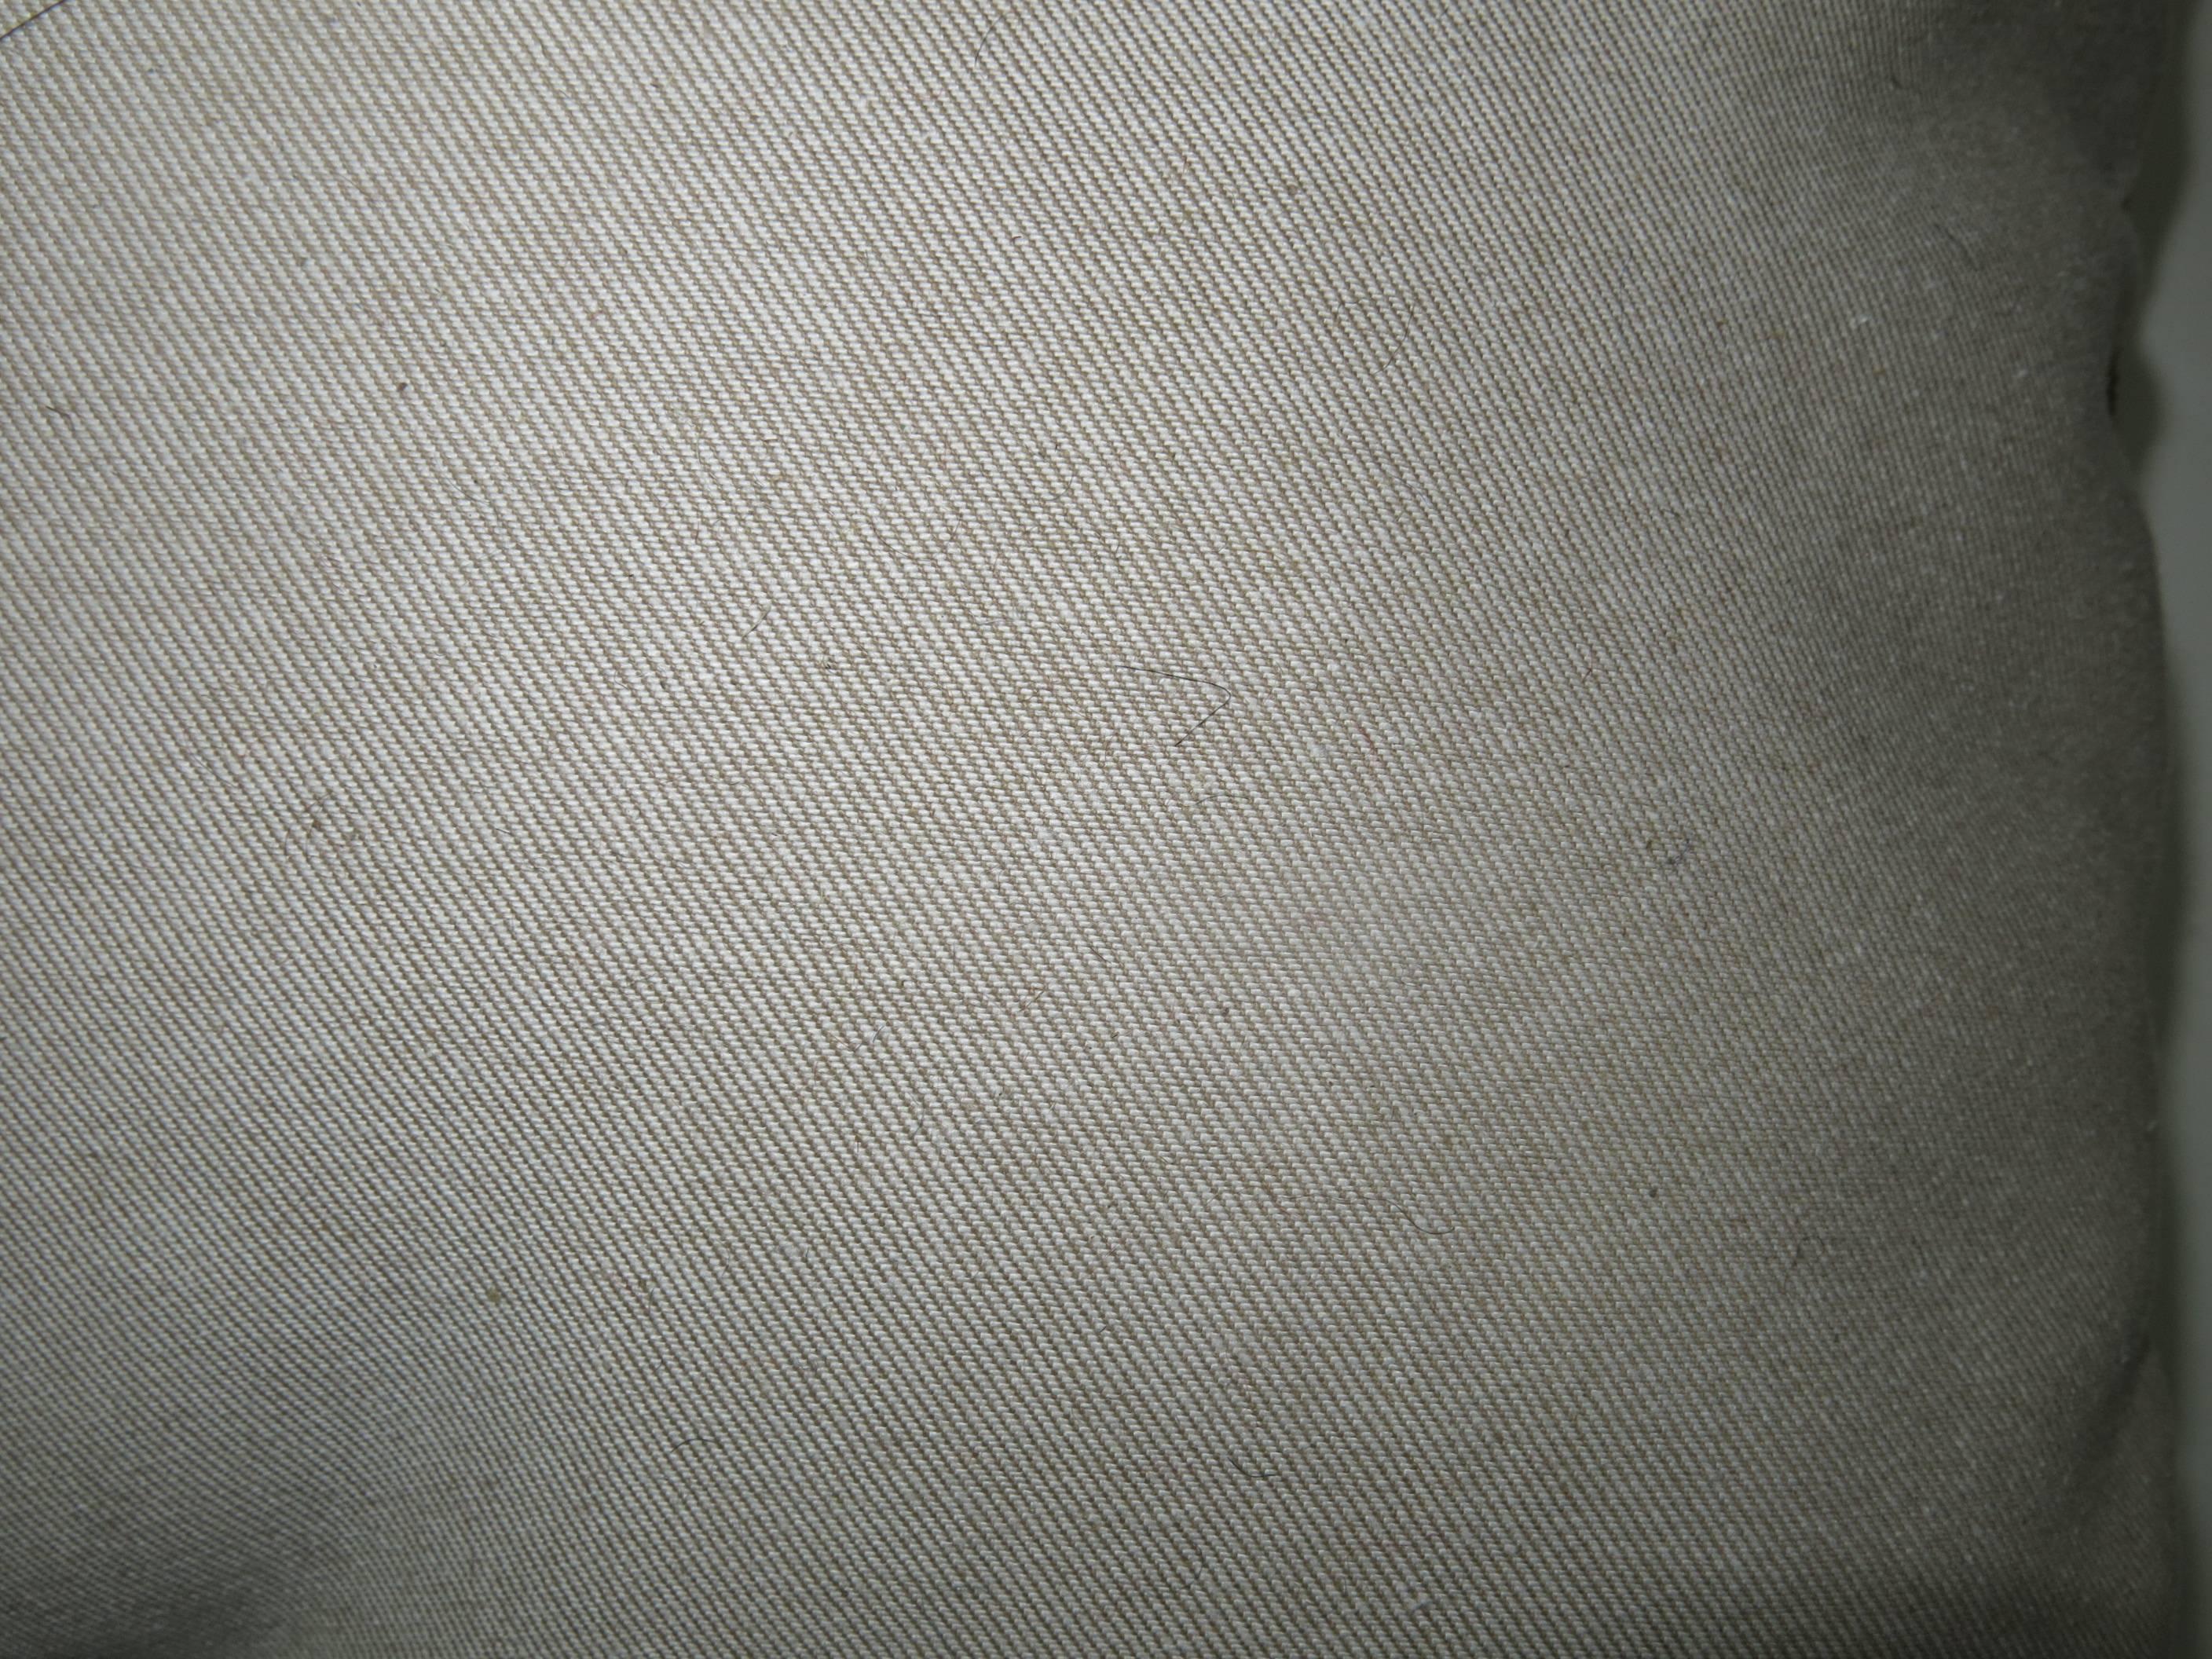 Oreiller provenant d'un tapis anatolien turc usé.

19'' x 20''